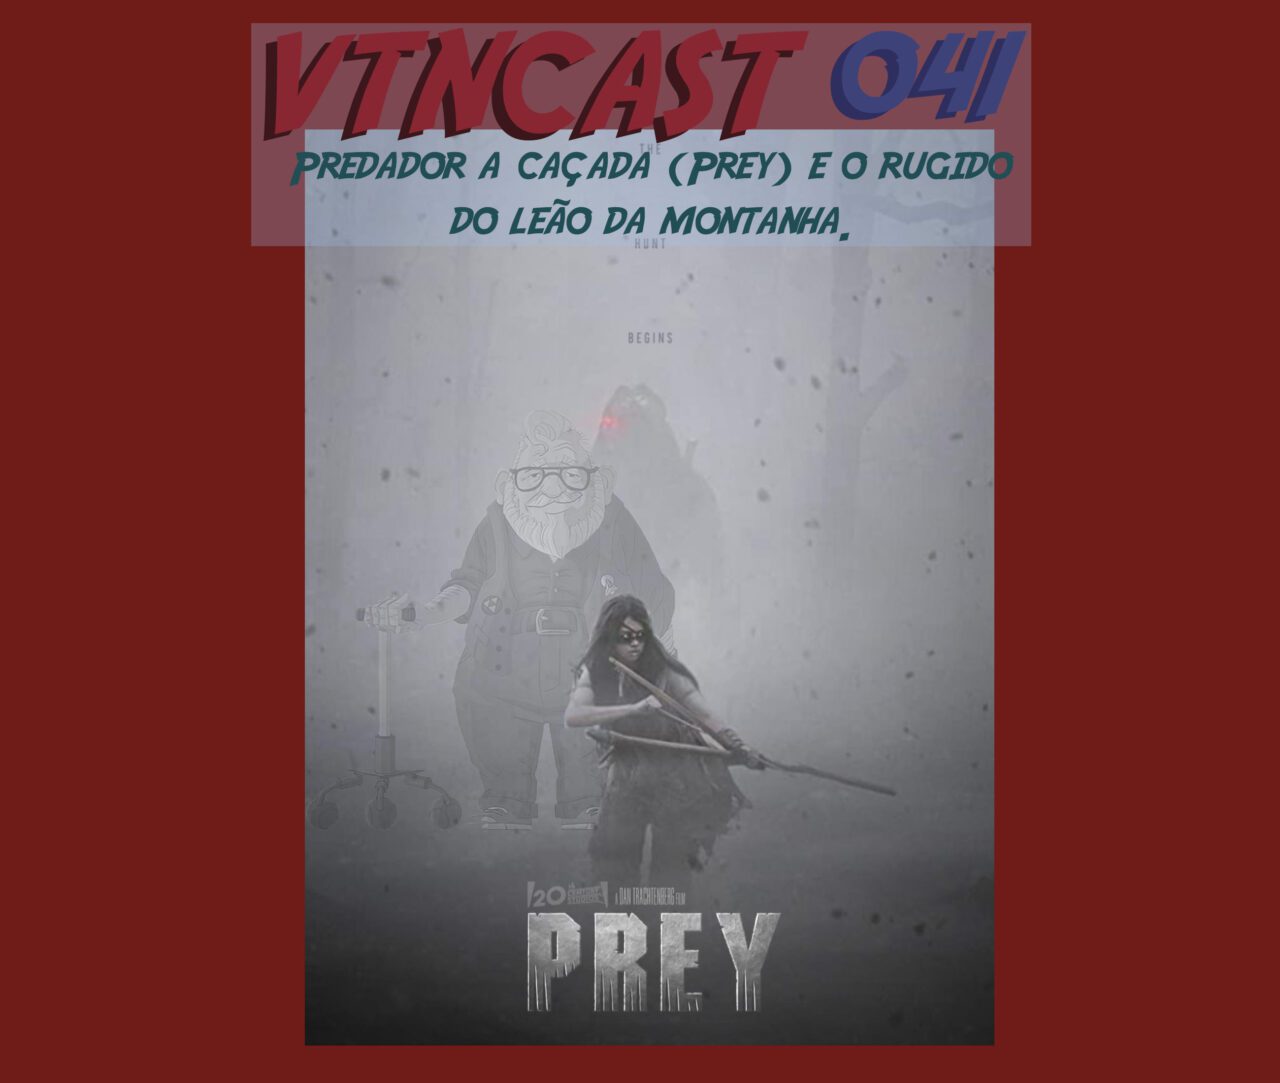 Podcast Filme VTNCast 041 - Predador a caçada (Prey) e o rugido do leão da montanha.